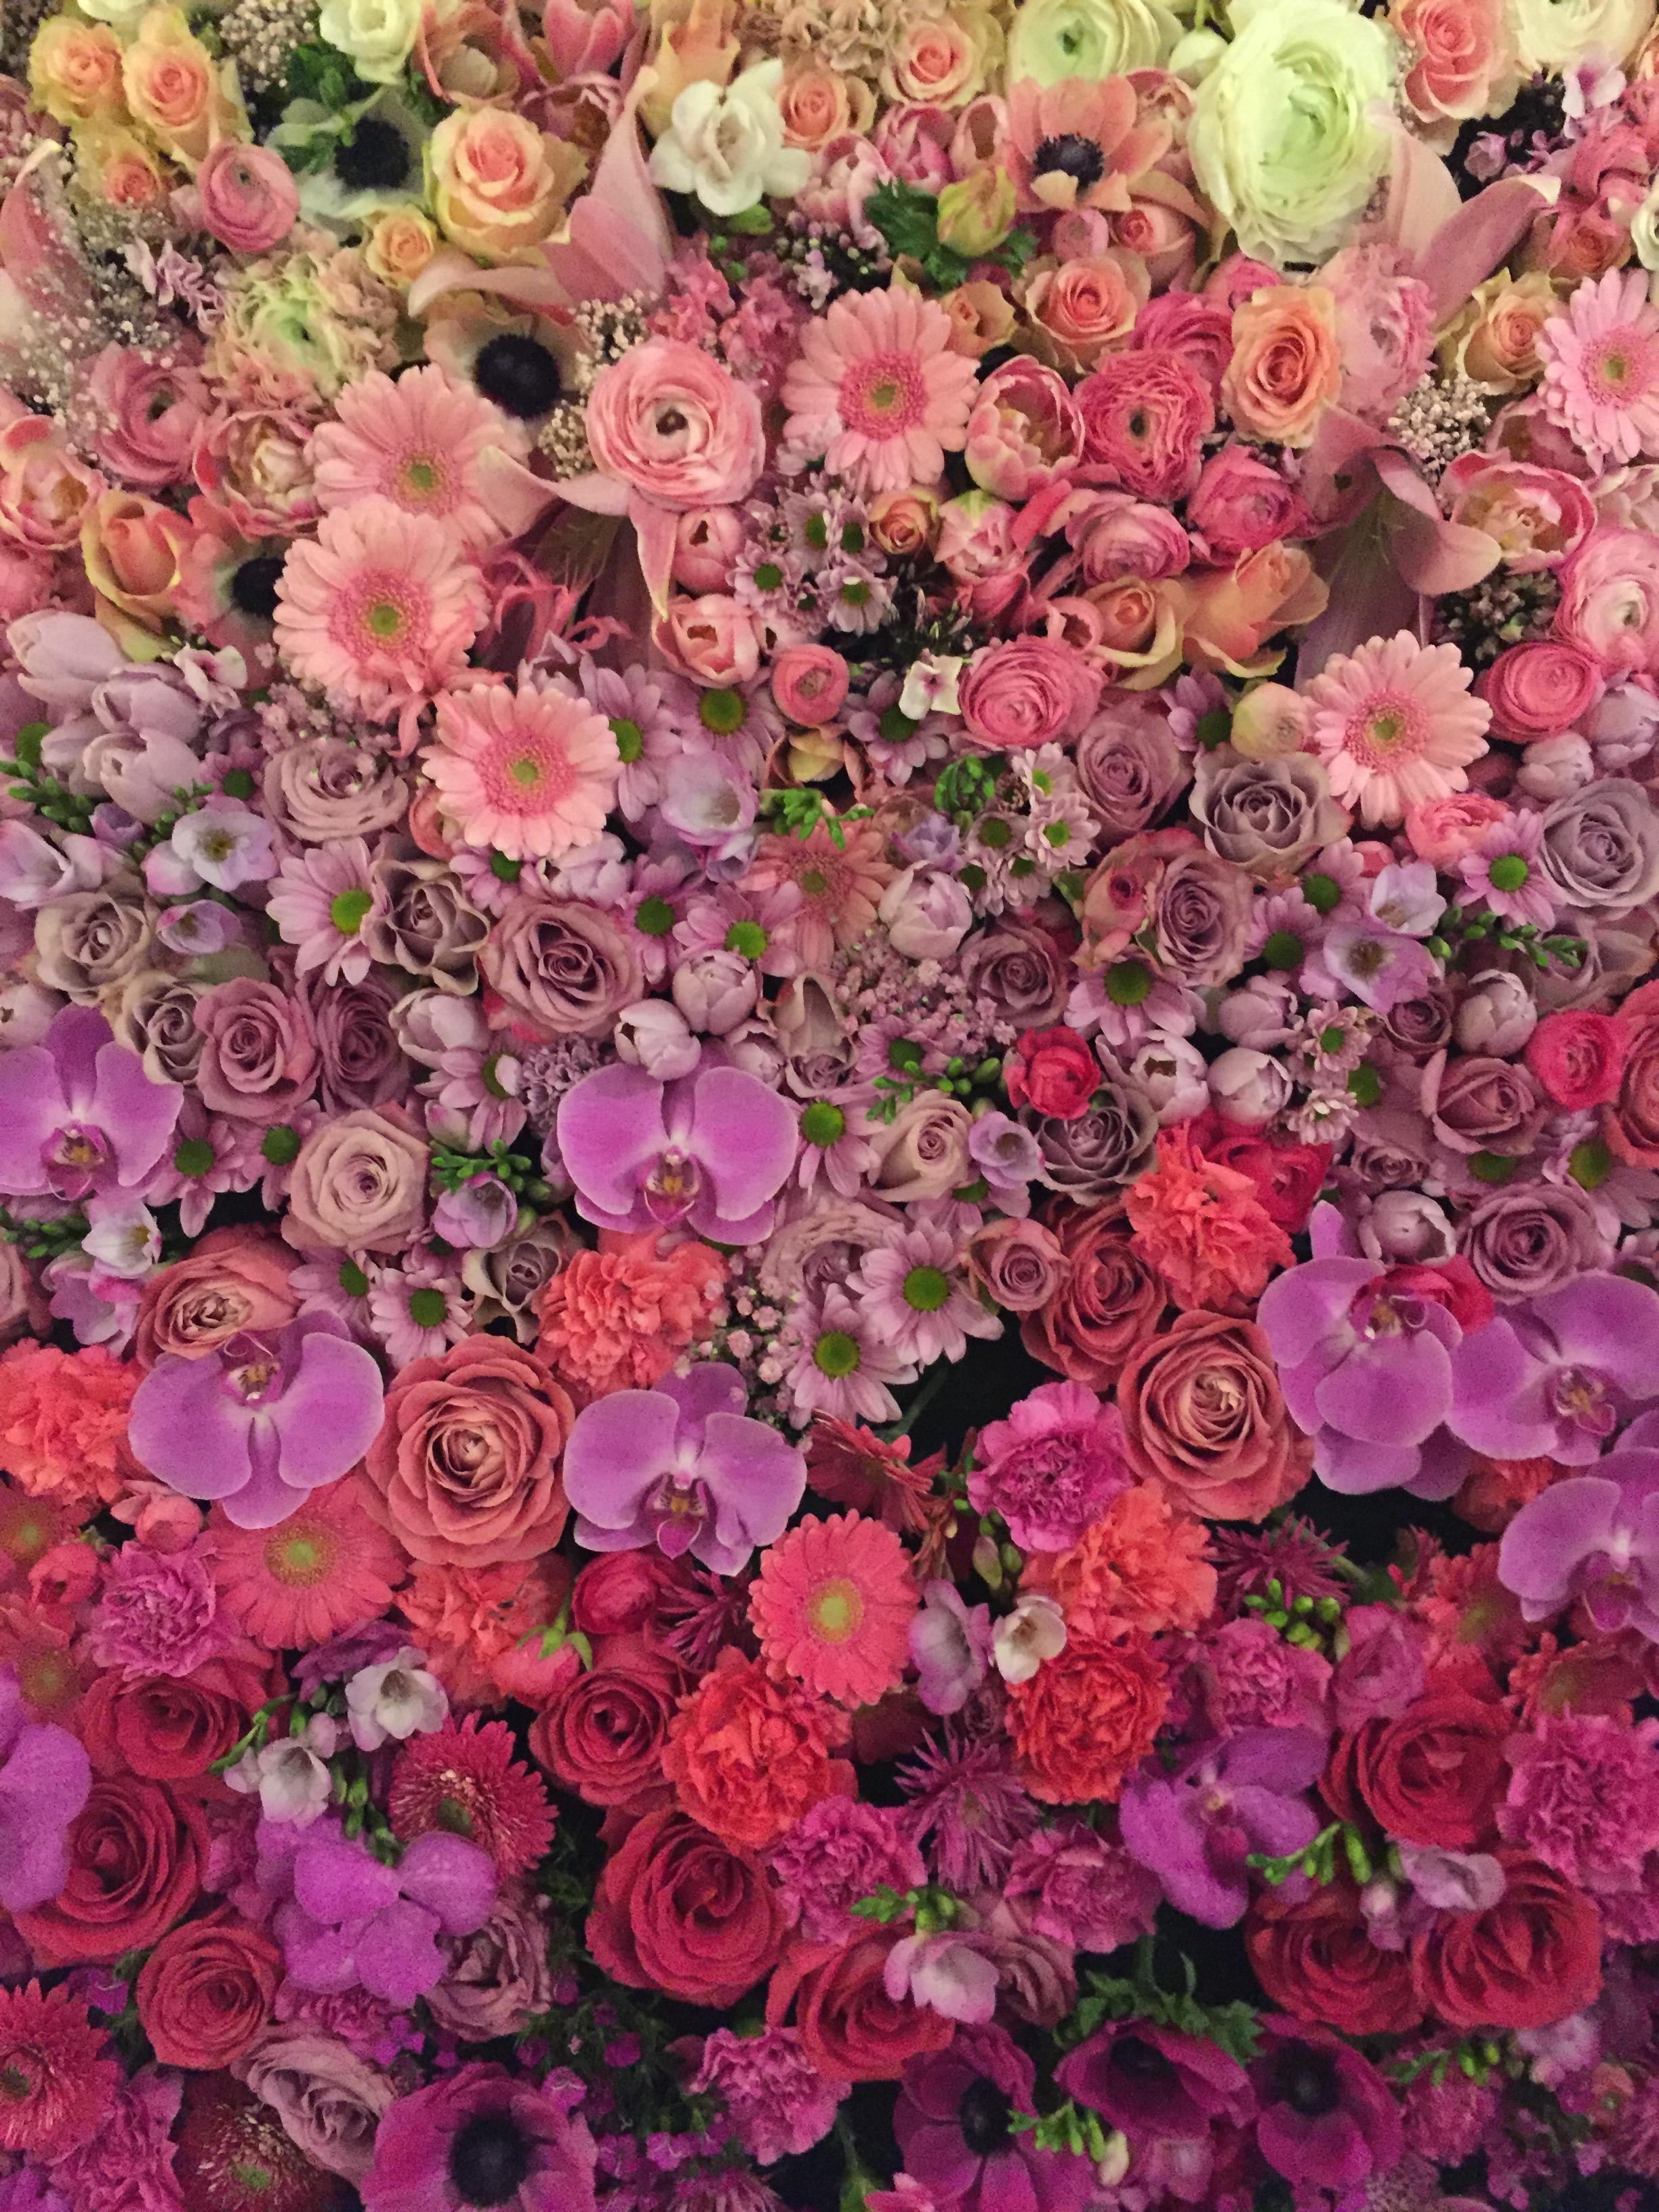 Frische Blumen für einen guten Wochenstart 👋🏽 #frischeblumen #flowerwall #blumenmeer #freshflowers #farbenmix